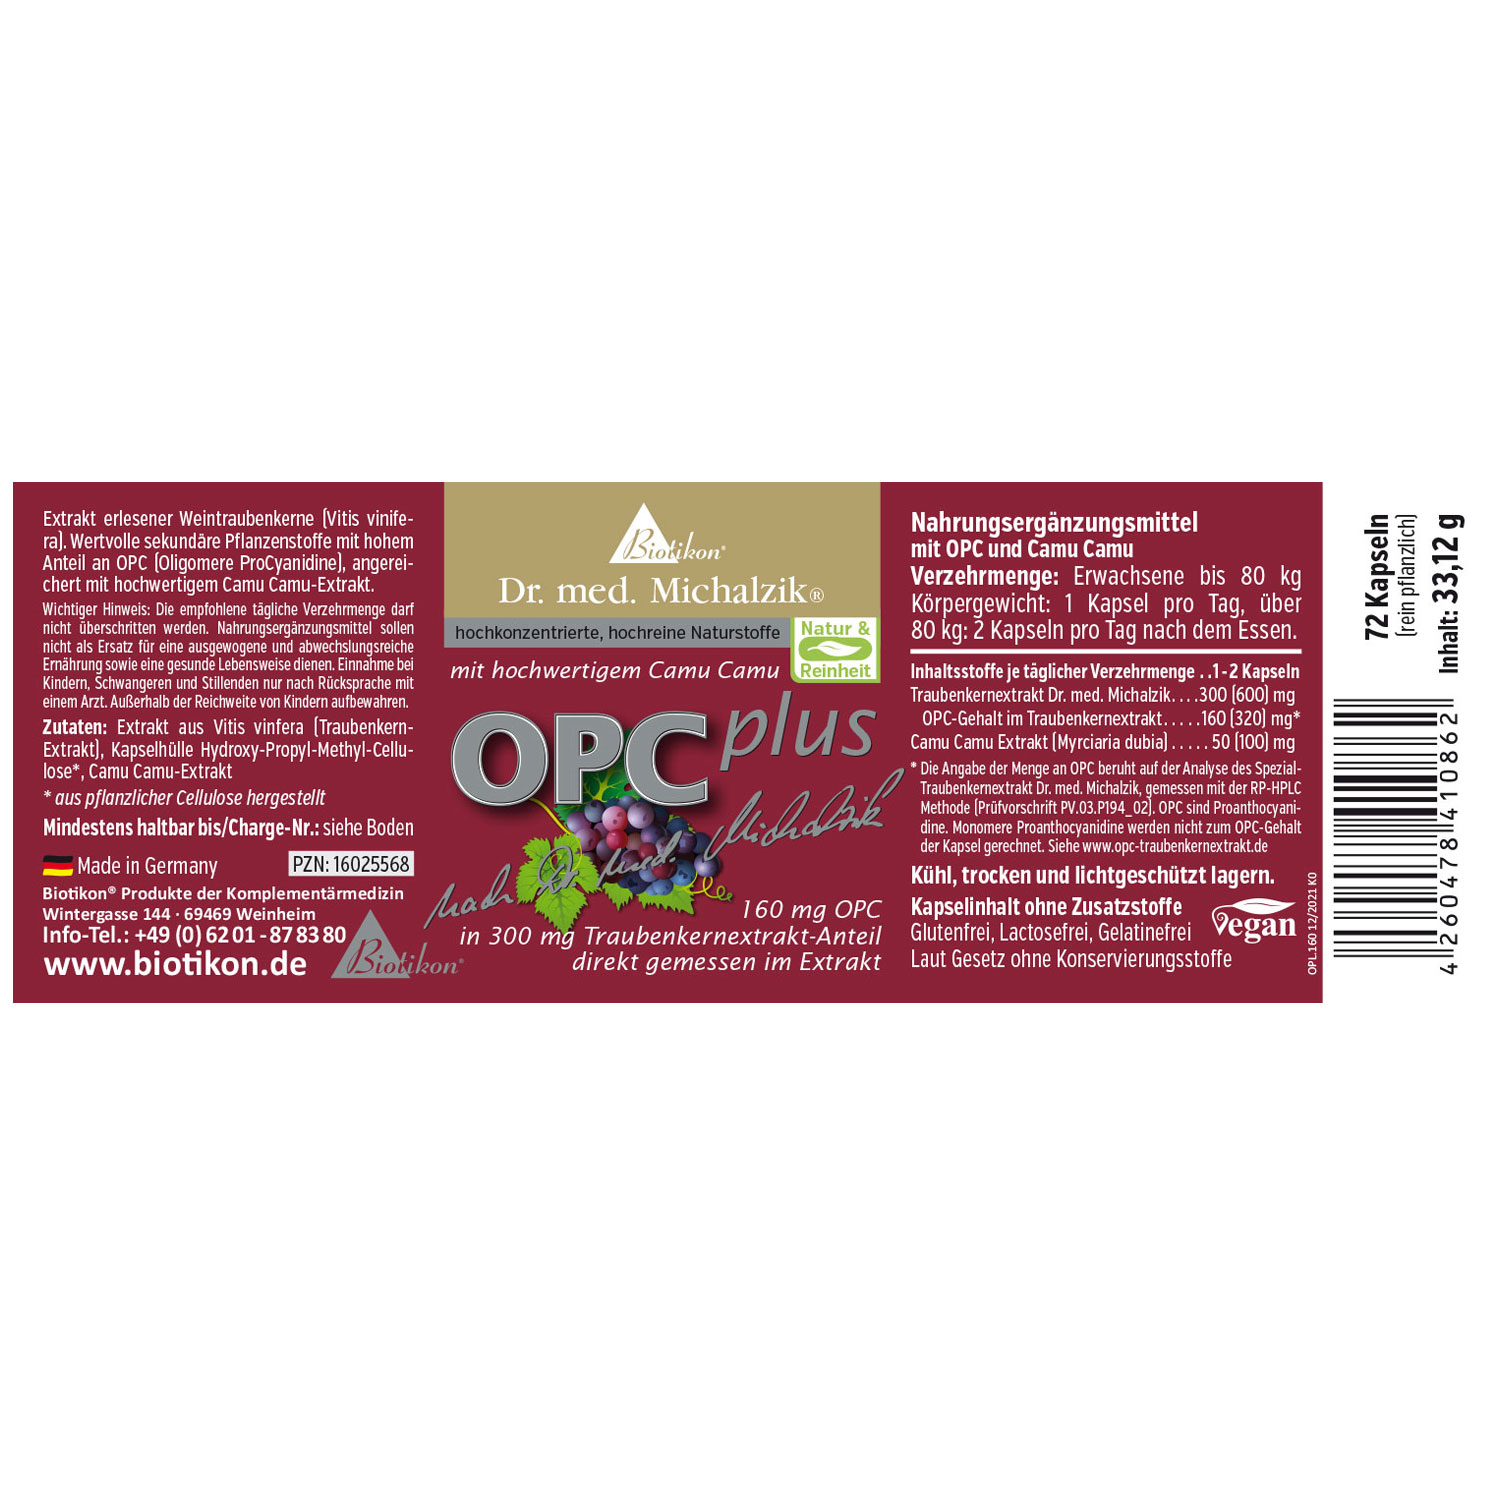 OPC Plus von Biotikon - Etikett